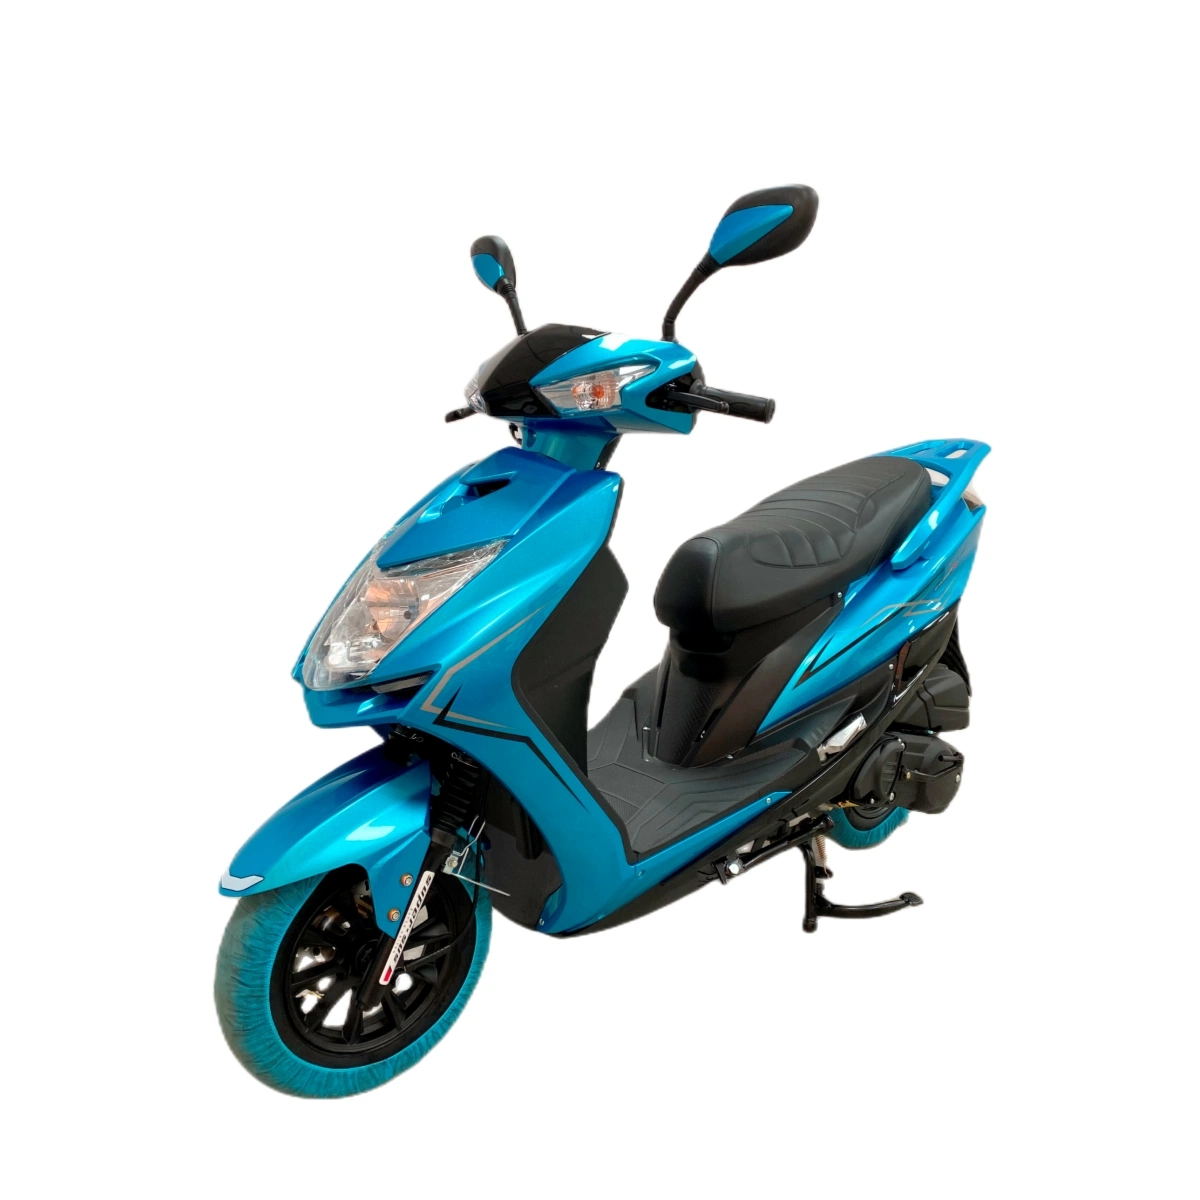 10% de réduction sur le scooter à moteur à essence Cygnuss150cc de conception classique de l'usine chinoise, moto, motocyclette, véhicule à essence, scooter de ville